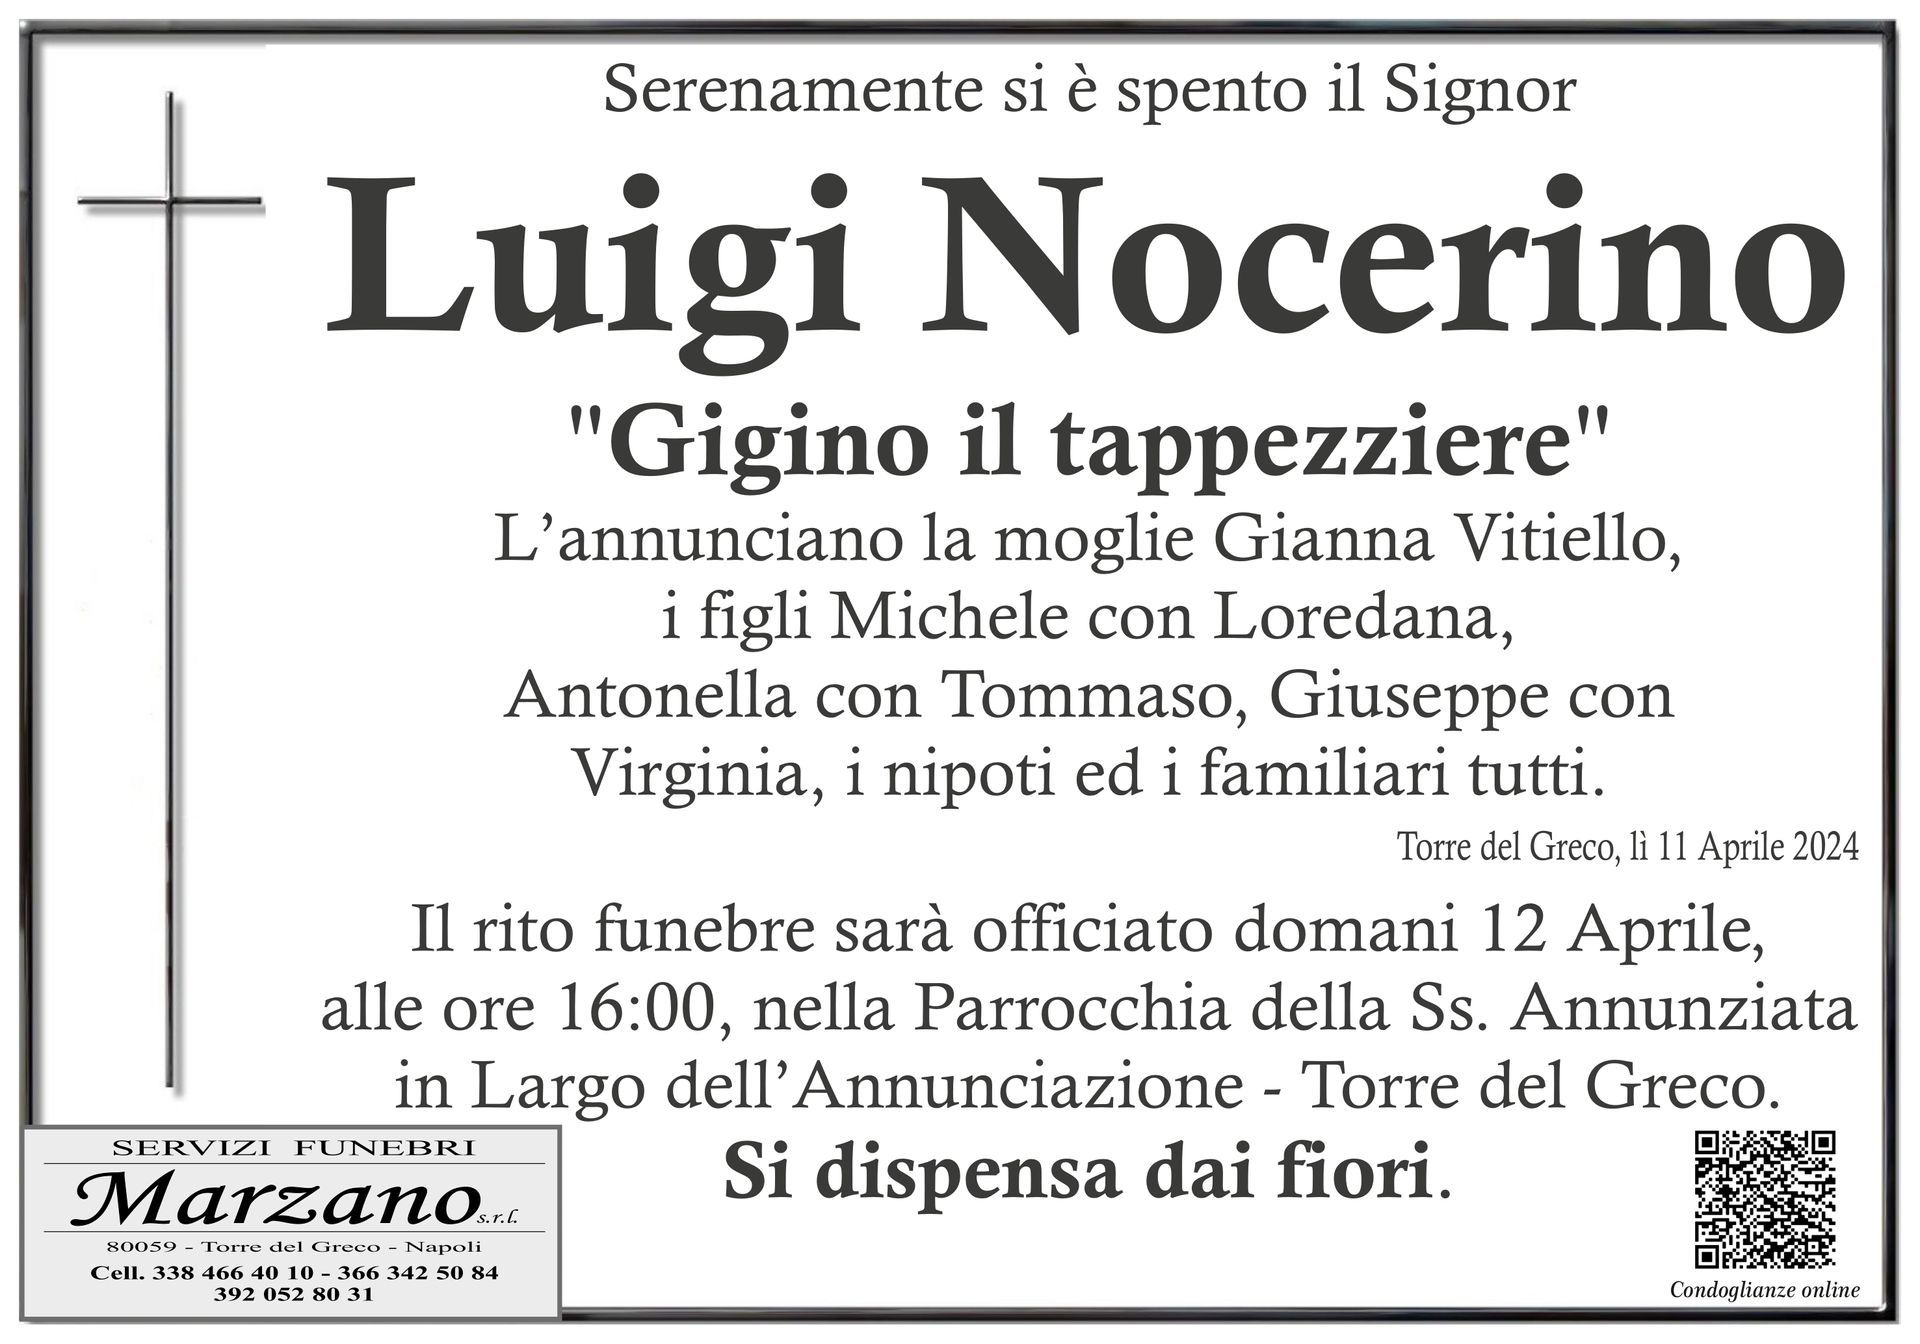 Luigi Nocerino 